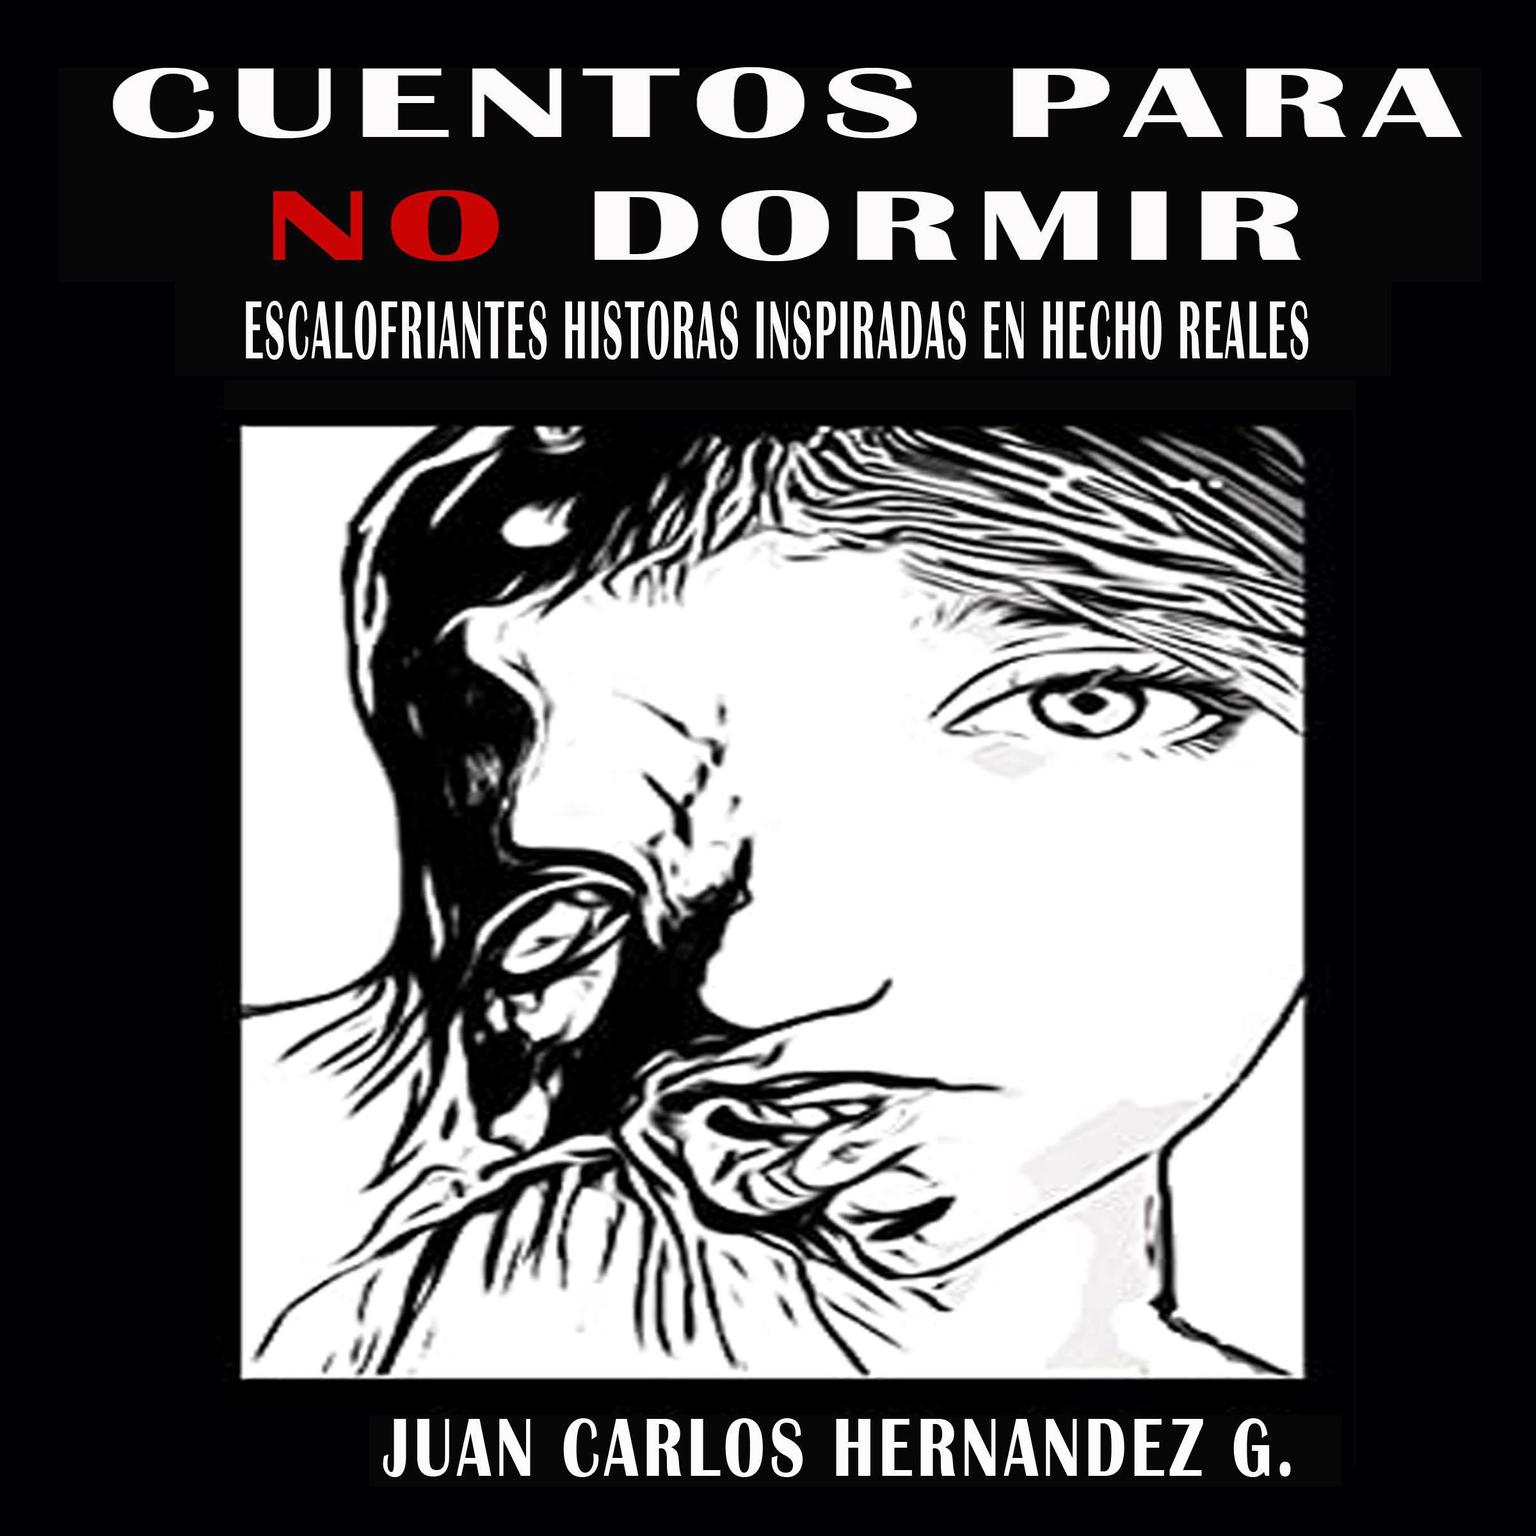 Cuentos para no dormir: Escalofriantes historias inspiradas en hechos reales Audiobook, by Juan Carlos Hernandez G.